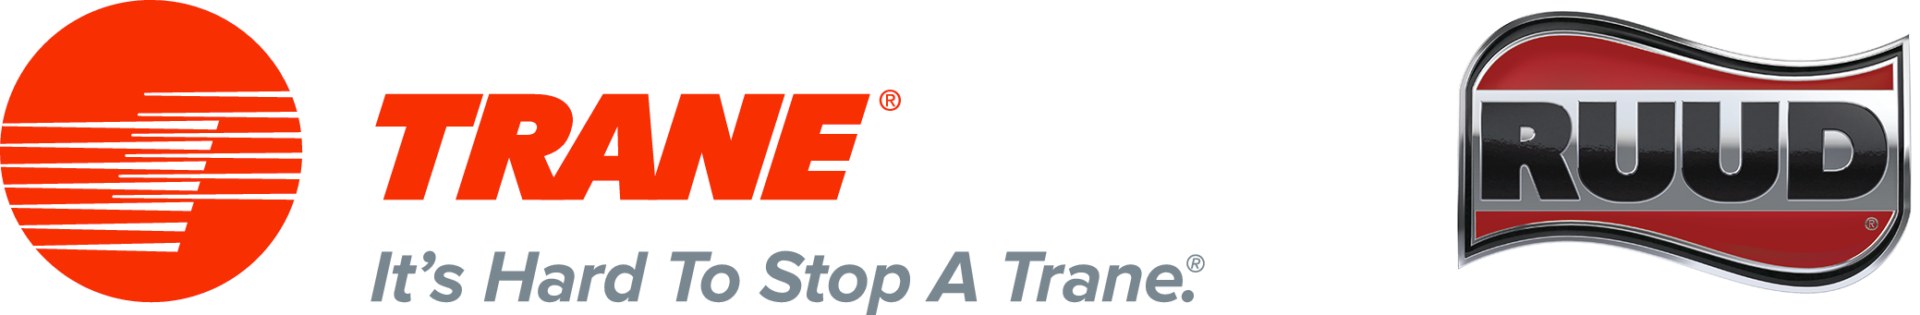 Trane - It's Hard to Stop a Trane Logo